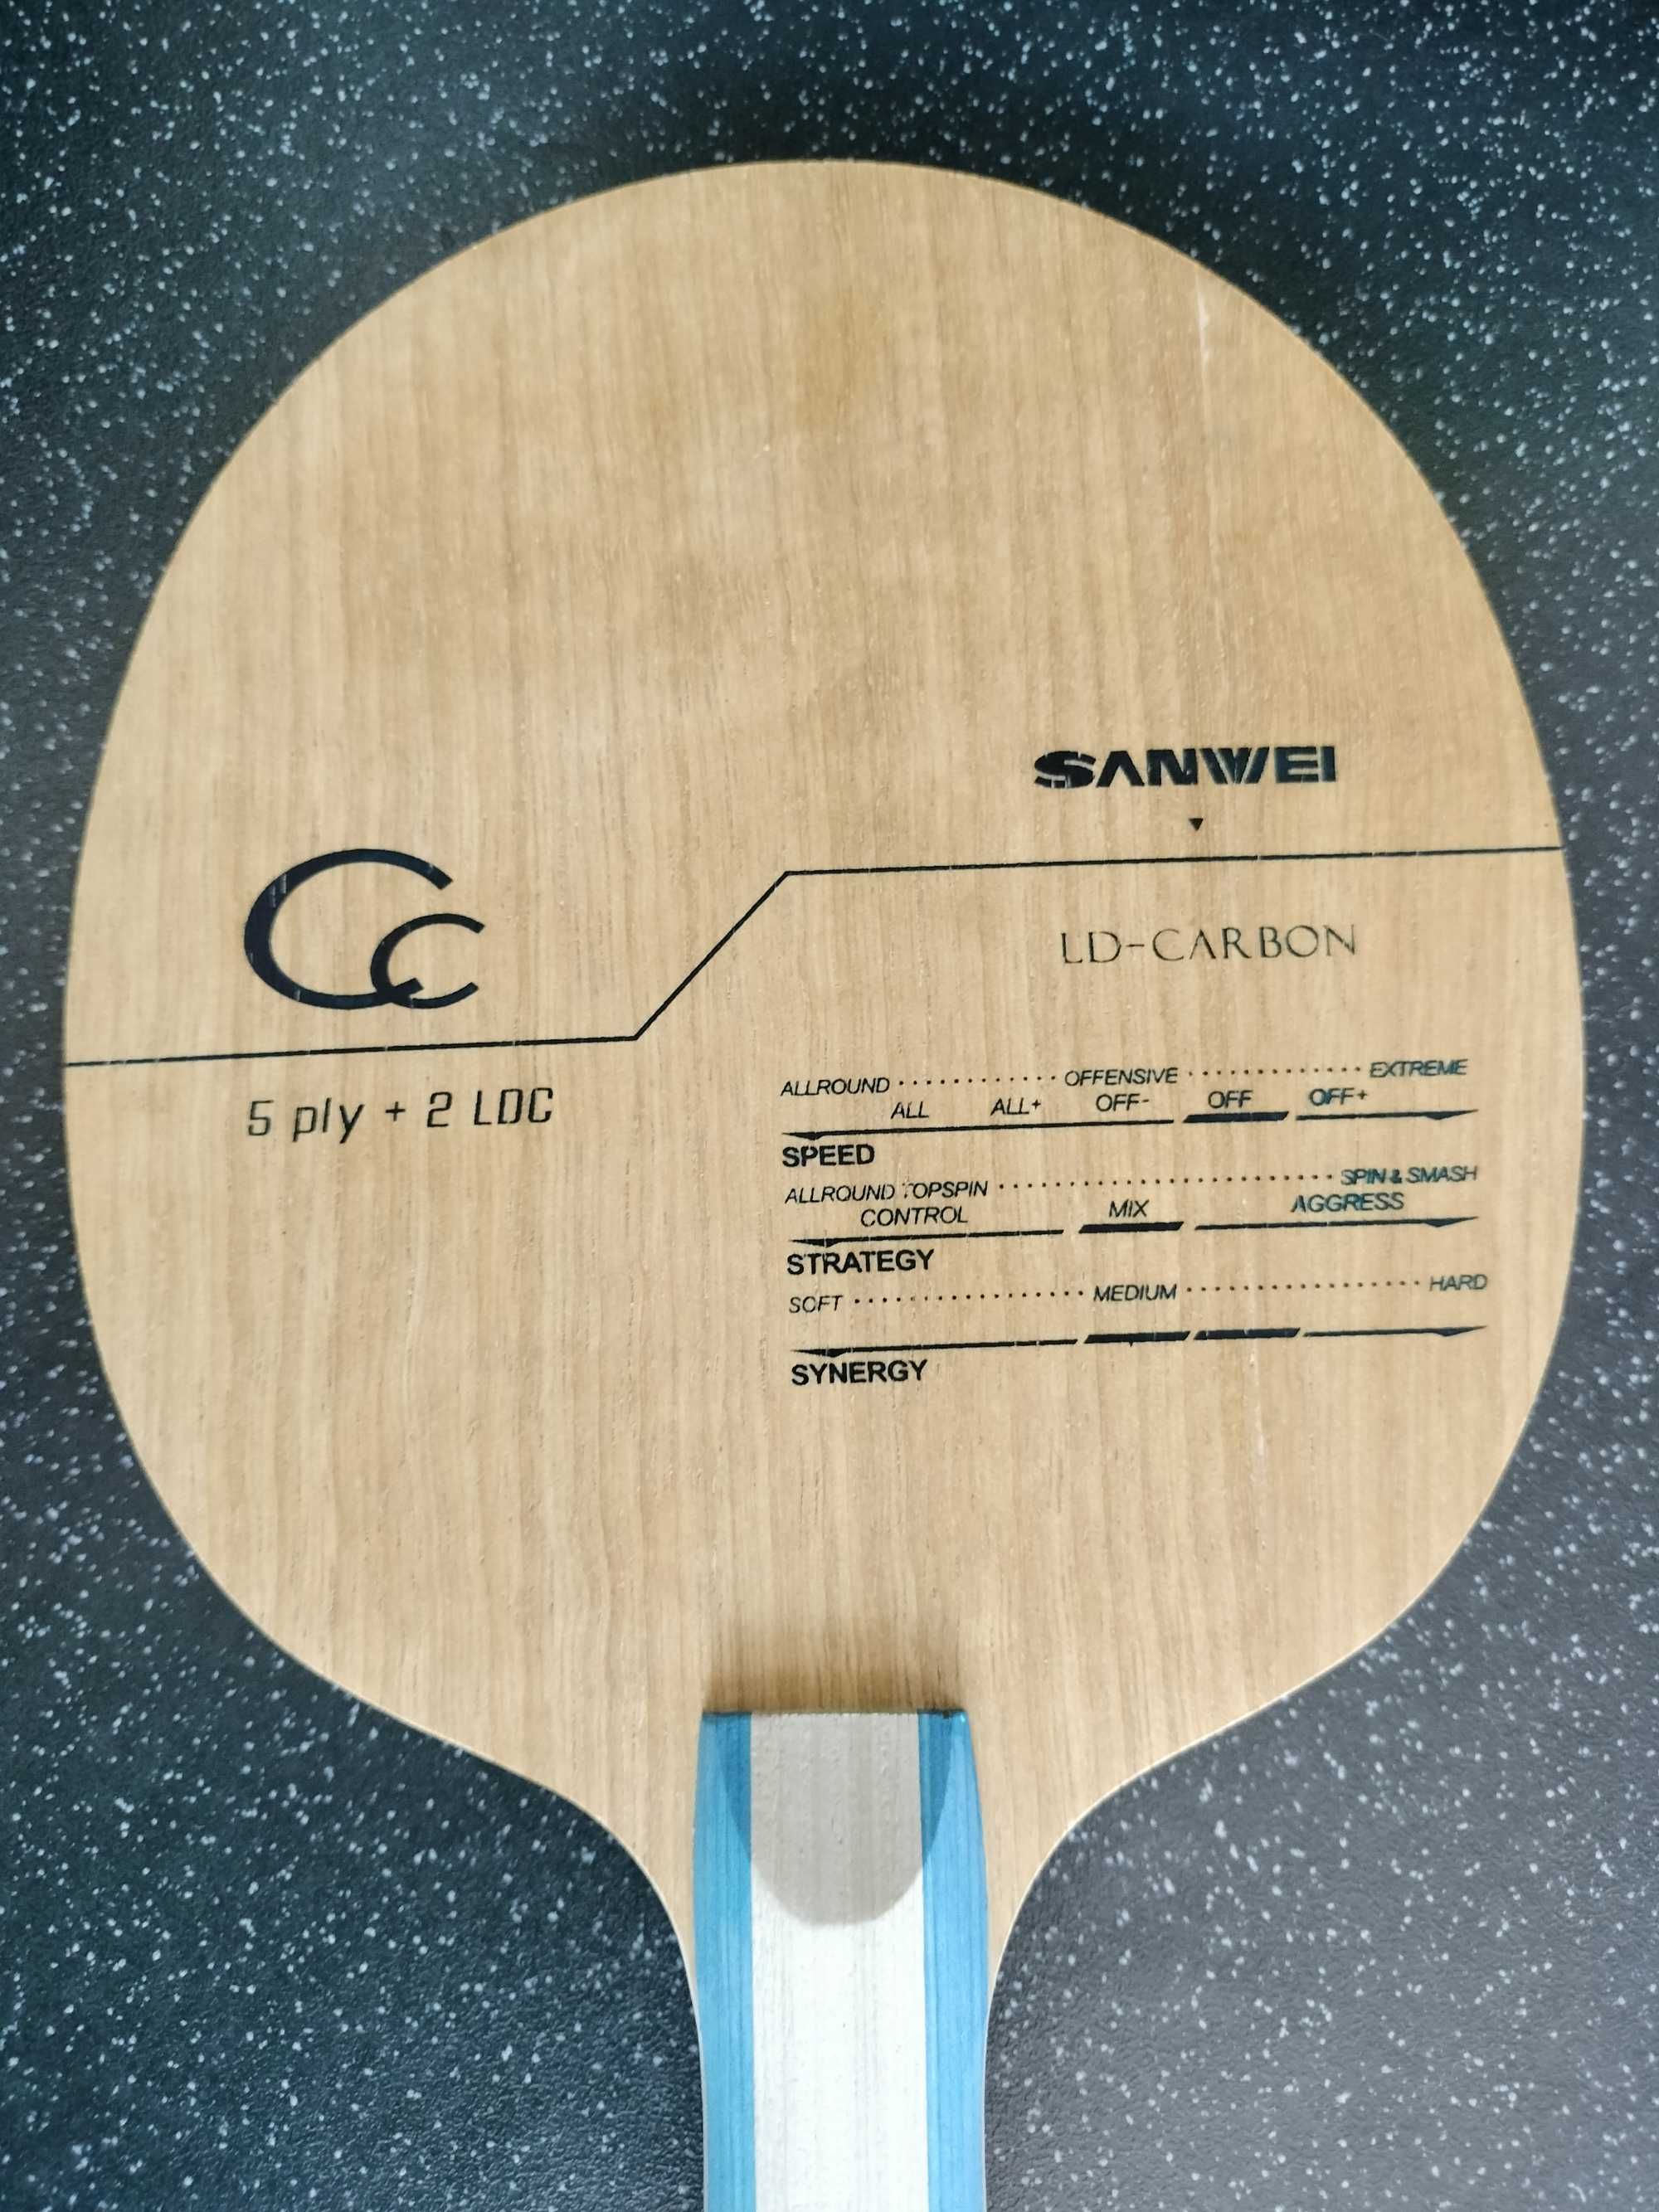 Deska Sanwei CC (5+2LCD) OFF- tenis stołowy